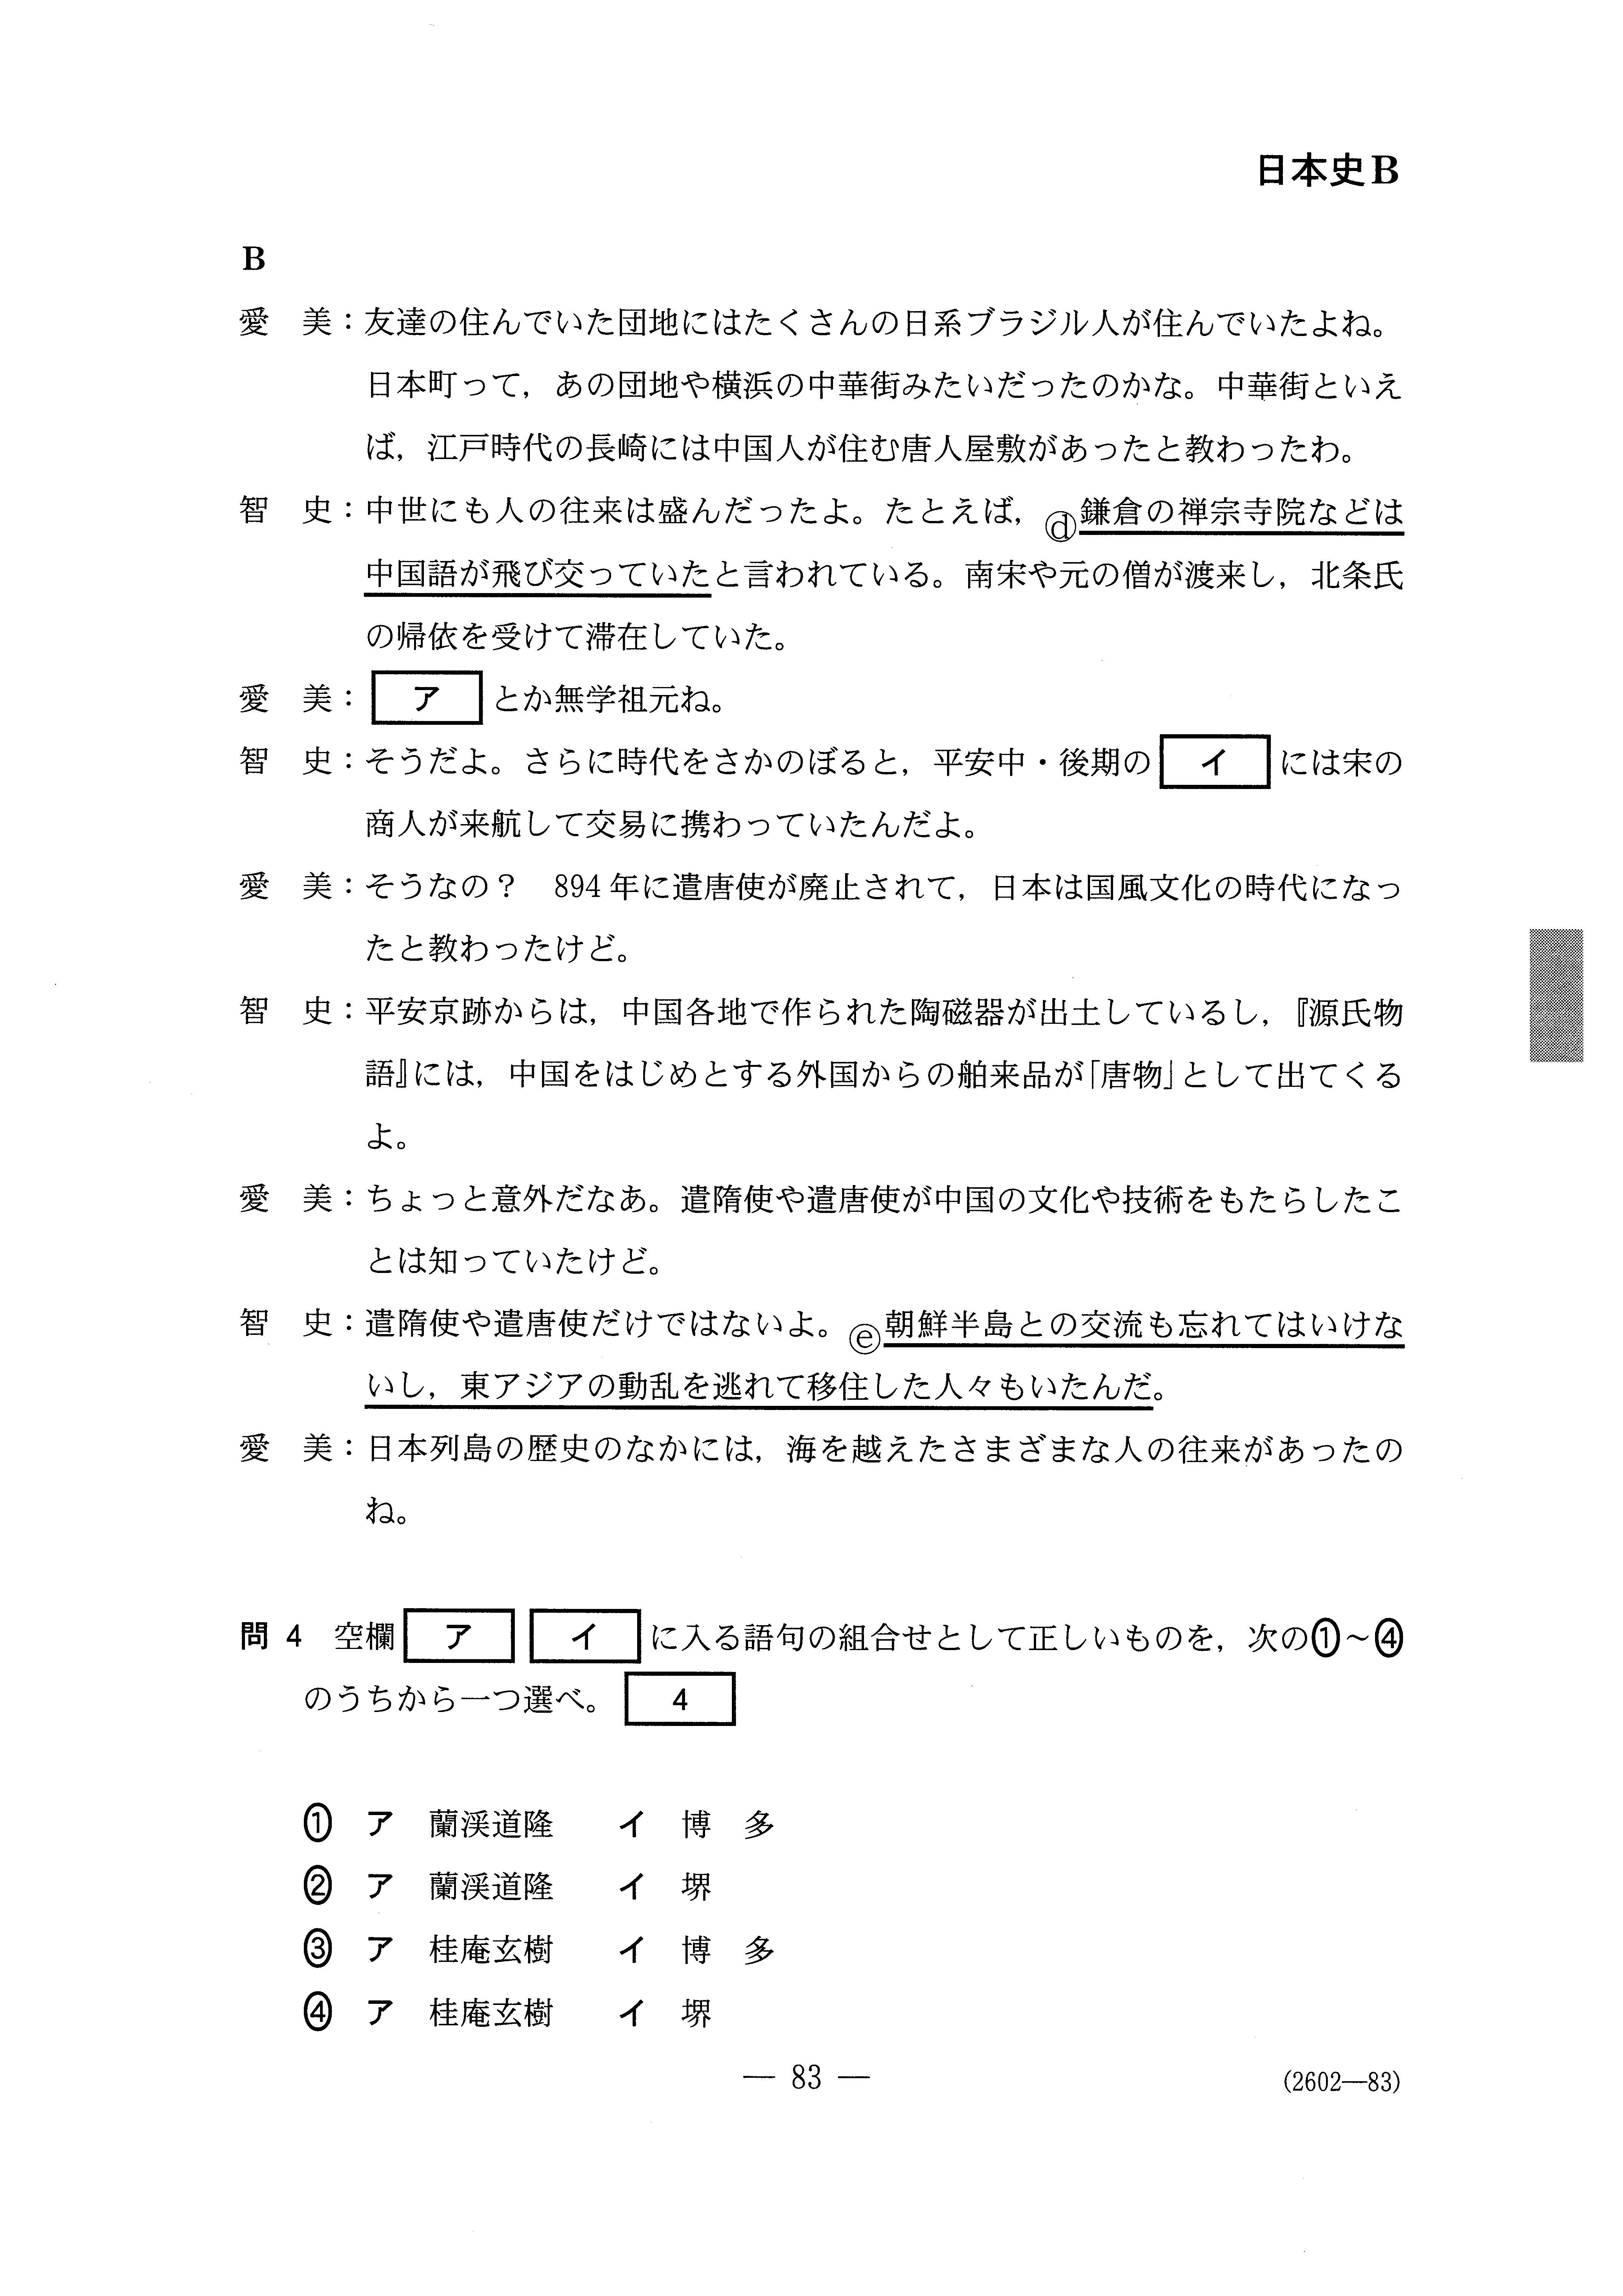 2015年 平成27年日本史B 大学入試センター試験過去問解答